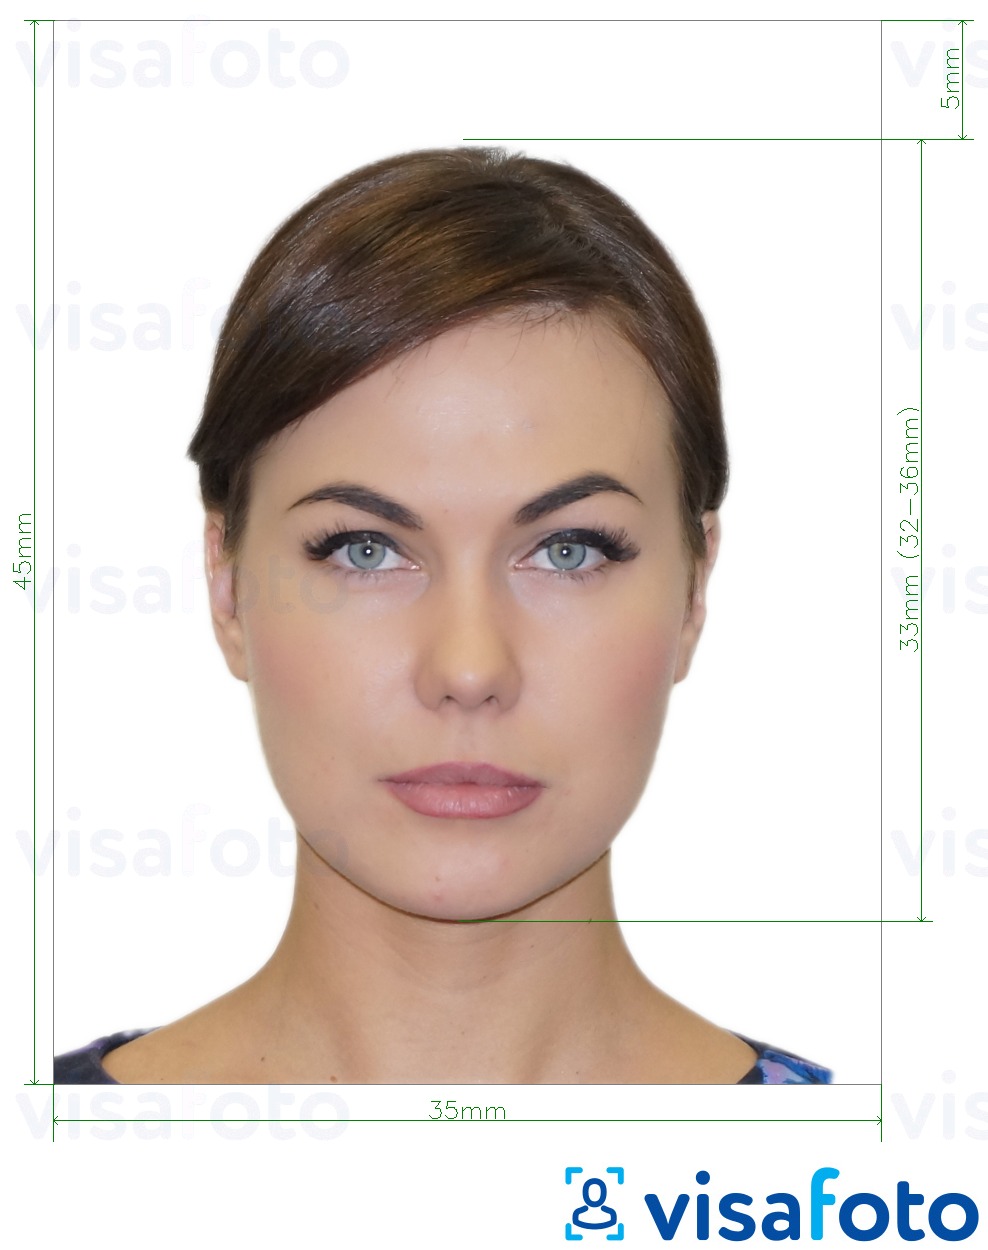 Ejemplo de foto para Visa Rusia 35x45 mm (3.5x4.5 cm) con la especificación del tamaño exacto